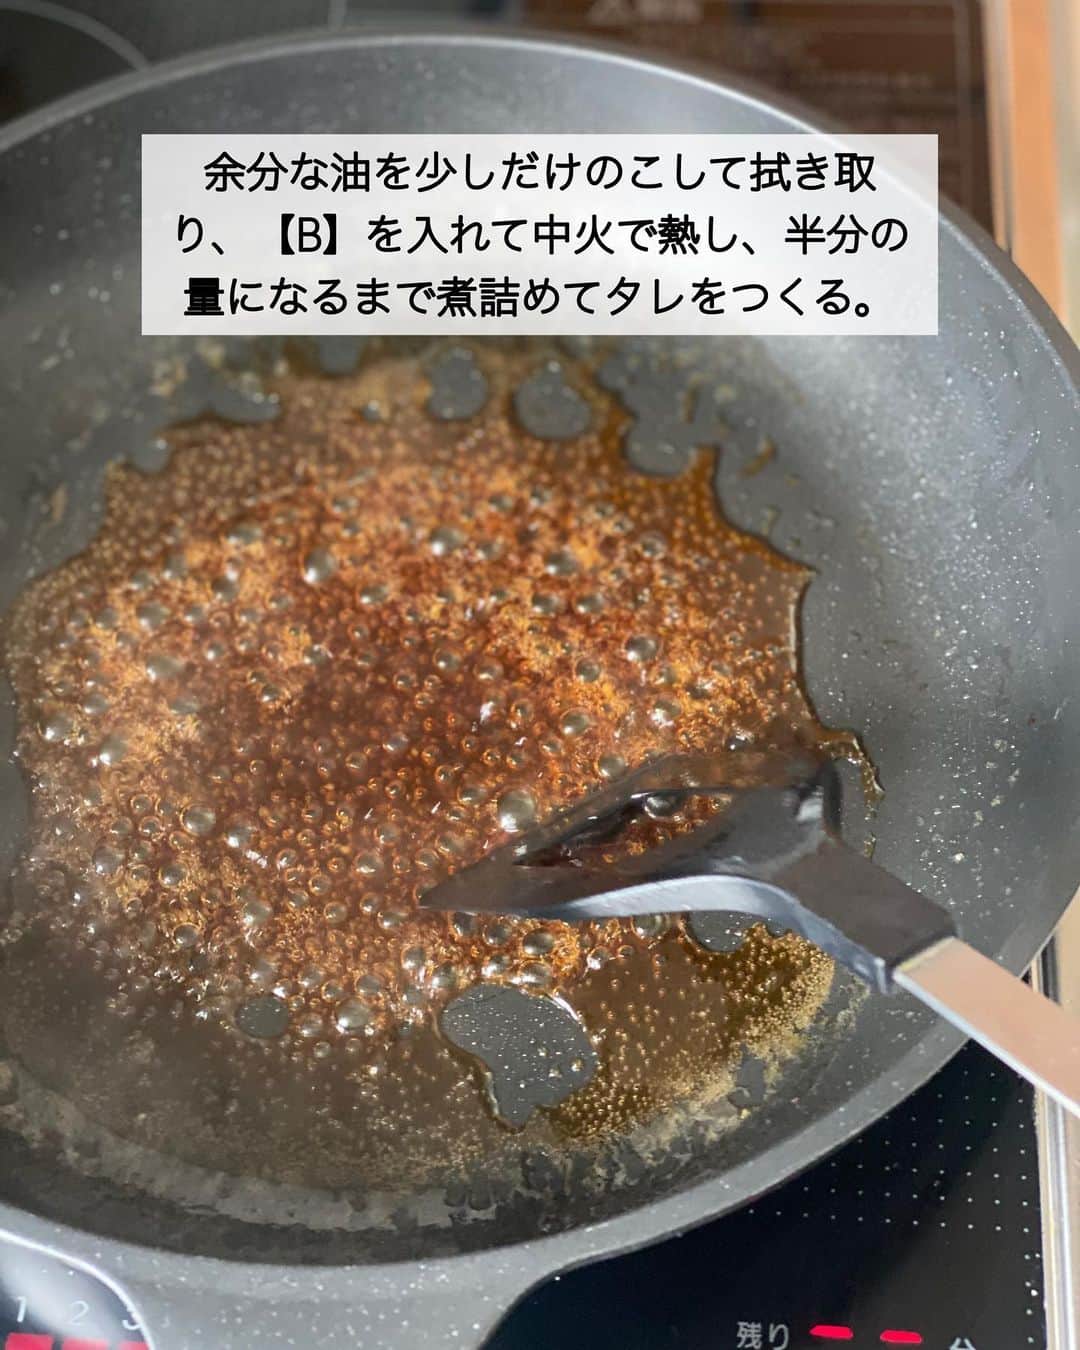 ちおりさんのインスタグラム写真 - (ちおりInstagram)「【ふんわりヘルシー✨】 ⁡ 他のレシピを見る→ @chiori.m.m をチェック✅ ⁡ ⁡ ━︎━︎━︎━︎━︎━︎━︎━︎━︎━︎━︎━︎━︎━︎━︎ ひじきの豆腐ハンバーグ ⁡ Nadiaレシピ🆔 460690 ━︎━︎━︎━︎━︎━︎━︎━︎━︎━︎━︎━︎━︎━︎━︎ ⁡ ⁡ ⁡ こんばんは(^ ^) ⁡ 今日は卵、パン粉不使用でも ふわっふわに焼ける 豆腐ハンバーグをご紹介させてください。 ひじき入りで栄養も◎ ⁡ 冷めても固くならず、柔らかいまま美味しいので 作り置きにやお弁当おかずにも最適です🍱 甘辛いソースをかけるとお子様が喜ぶ味つけに。 ⁡ ハンバーグ自体はほんのり味つきなので 薄味がお好みの方はそのまま食べても🙆🏻‍♀️ わたしはソース無しで柚子胡椒を少しのせて 食べるのが好きです（とっても合います👌🏻） ⁡ 良かったら作ってみてください😊 ⁡ ⁡ ________________________________________ ⁡ ⁡ ✍︎ ✍︎recipe ✍︎ ✍︎ ⁡ 👩‍🌾【材料】2〜3人分 •ひじき（乾燥）………大さじ1 •木綿豆腐…………………150g •玉ねぎ……………………1/4個 •豚ひき肉…………………300g •バター……………………10g A片栗粉……………………大さじ2 Aマヨネーズ ……………大さじ1 A鶏ガラスープの素……小さじ1 A粗挽き黒胡椒…………小さじ1/4 Bみりん……………………大さじ2 B酒、しょうゆ、水……各大さじ1 B砂糖、にんにくチューブ……各小さじ1/2 ⁡ ⁡ ________________________________________ ⁡ ⁡ ⁡ 👩‍🍳【作り方】 ① ひじきは水で戻し水気を切る。豆腐は重ねたペーパータオルで包み、両手でかるくおさえて水気を切る。玉ねぎはみじん切りにする。 ⁡ ②ボウルにひじき、豆腐、玉ねぎ、ひき肉、【A】を入れる。なめらかになるまでよく混ぜて6〜8等分に成形する。 ⁡ ③フライパンにバターを熱し、肉だねを入れて中火で焼く。両面に焼き色がついたら弱火にして蓋をし4〜5分ほど焼き、取り出す。 ⁡ ④余分な油を少しだけのこして拭き取り、【B】を入れて中火で熱し、半分の量になるまで煮詰めてタレをつくる。 ⁡ ⑤器にハンバーグを盛り、④のタレをかけていただく。 ⁡ ⁡ ⁡ ________________________________________ ⁡ ⁡ ⁡ ⁡ 📝【POINT】 •タネは柔らかいので手に水をつけて成形するときれいにまとまります。 ⁡ •バターはマーガリンまたはサラダ油で代用OKです。 ⁡ •ひじき無しでもお作りいただけます。 ⁡ •日持ちは冷蔵で2〜3日。 ⁡ •冷凍保存可。冷凍する場合はなるべく豆腐の水分をしっかり切ってからお作りください。焼いたものはラップで1つずつ包み保存袋に入れて冷凍してください。 ⁡ ⁡ ⁡ ⁡ ≡︎≡︎≡︎≡︎≡︎≡︎≡︎≡︎≡︎≡︎≡︎≡︎≡︎≡︎≡︎≡︎≡︎≡︎≡︎≡︎≡︎≡︎≡︎≡︎≡︎≡︎≡︎≡︎≡︎≡︎≡︎≡︎≡︎≡︎ 【✅新刊レシピ本のお知らせ】 📕ちおり流くり返し作りたいおかず 🙇🏻‍♀️おかげ様で書籍累計10万部を突破しました。 ⁡ ⁡ 全国の書店、Amazon、楽天ブックス 宝島チャンネルにて発売中です。 ⁡ ➤ ➤ ➤ @chiori.m.m のストーリーハイライト。 プロフィールのリンクからご覧いただけます😊 📗ちおりの簡単絶品おかず１、２ 既刊もぜひご覧いただきたいです。 ⁡ ≡︎≡︎≡︎≡︎≡︎≡︎≡︎≡︎≡︎≡︎≡︎≡︎≡︎≡︎≡︎≡︎≡︎≡︎≡︎≡︎≡︎≡︎≡︎≡︎≡︎≡︎≡︎≡︎≡︎≡︎≡︎≡︎≡︎≡︎ ⁡ ⁡ ⁡ 最後までご覧いただきありがとうございます☺️ ⁑ ⁑ ⁑ ⁑ ⁑ ⁑ ⁑ ⁑ #豆腐ハンバーグ #豆腐レシピ   #Nadiaレシピ #Nadiaartist  #japanesefood   #食卓 #献立 #簡単ごはん #作り置き  #簡単レシピ #節約レシピ #時短レシピ  #日々の暮らし #作り置きレシピ #ひじき   #夕飯レシピ #お弁当レシピ #基本のレシピ  #料理初心者 #おつまみレシピ #ひじきレシピ  #ハンバーグレシピ #レシピ #豚ひき肉  #料理レシピ #ひき肉 #ひき肉レシピ」5月16日 20時39分 - chiori.m.m